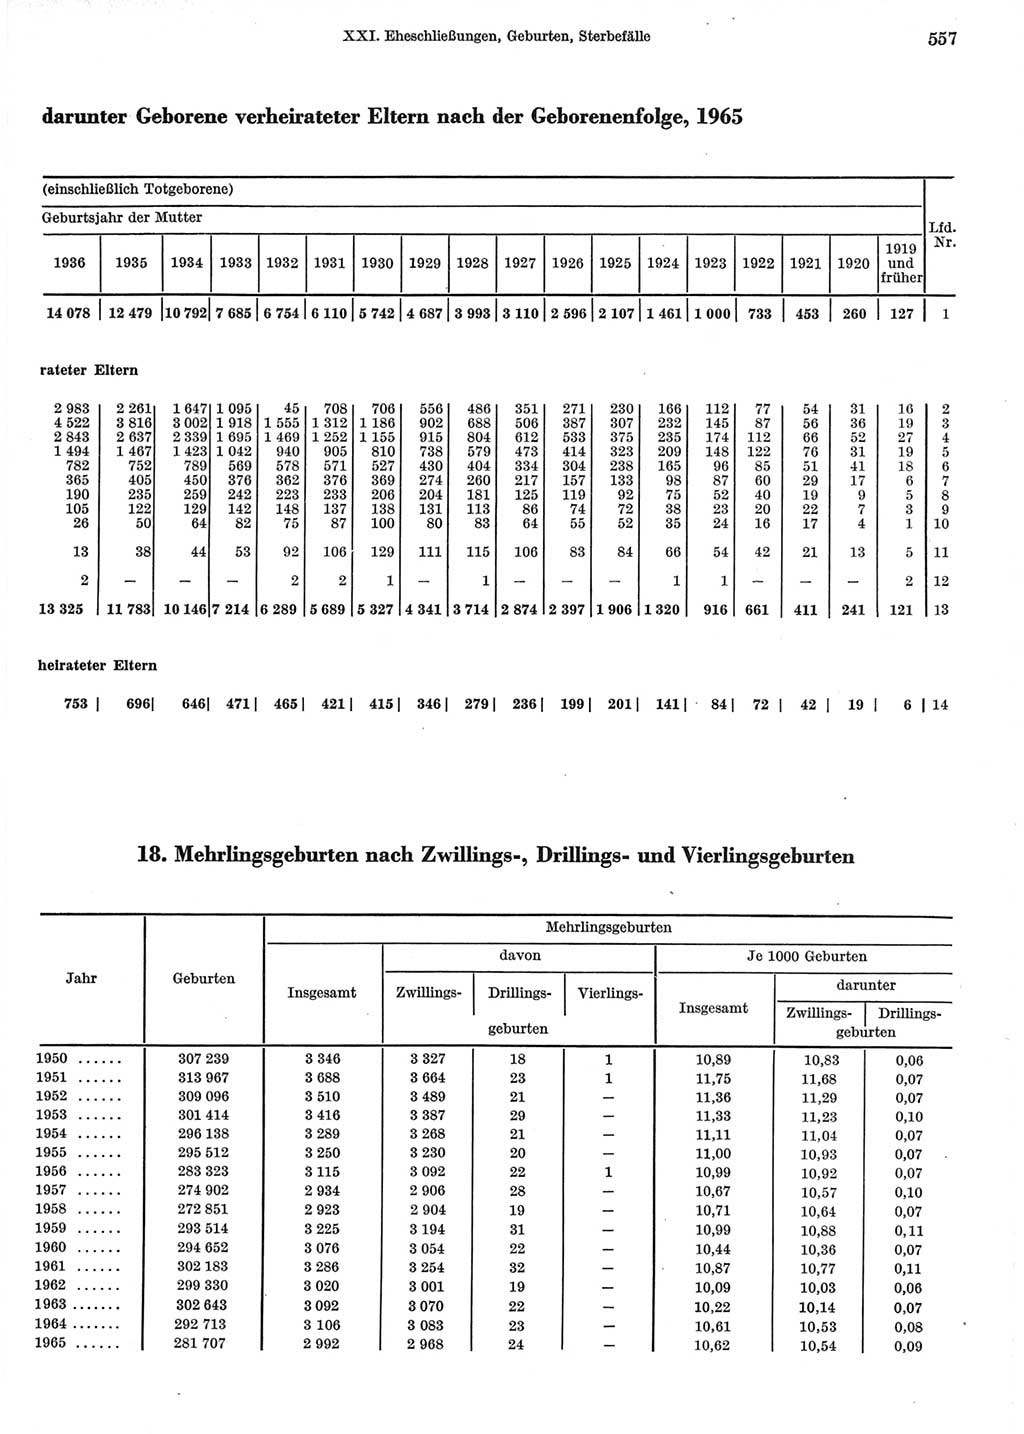 Statistisches Jahrbuch der Deutschen Demokratischen Republik (DDR) 1967, Seite 557 (Stat. Jb. DDR 1967, S. 557)